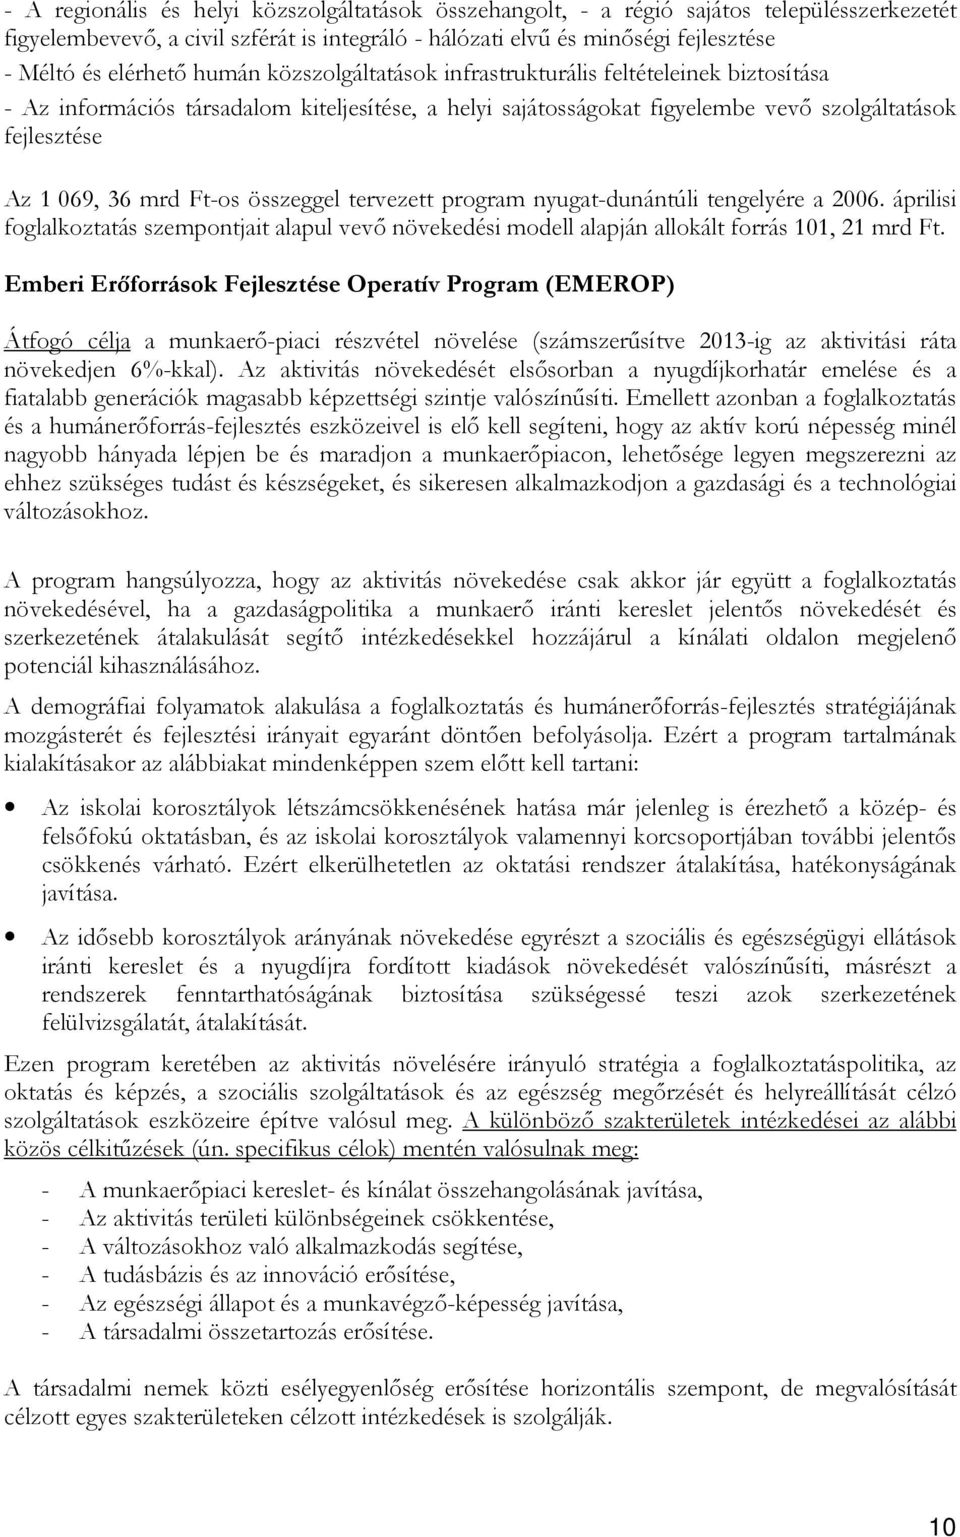 összeggel tervezett program nyugat-dunántúli tengelyére a 2006. áprilisi foglalkoztatás szempontjait alapul vevı növekedési modell alapján allokált forrás 101, 21 mrd Ft.